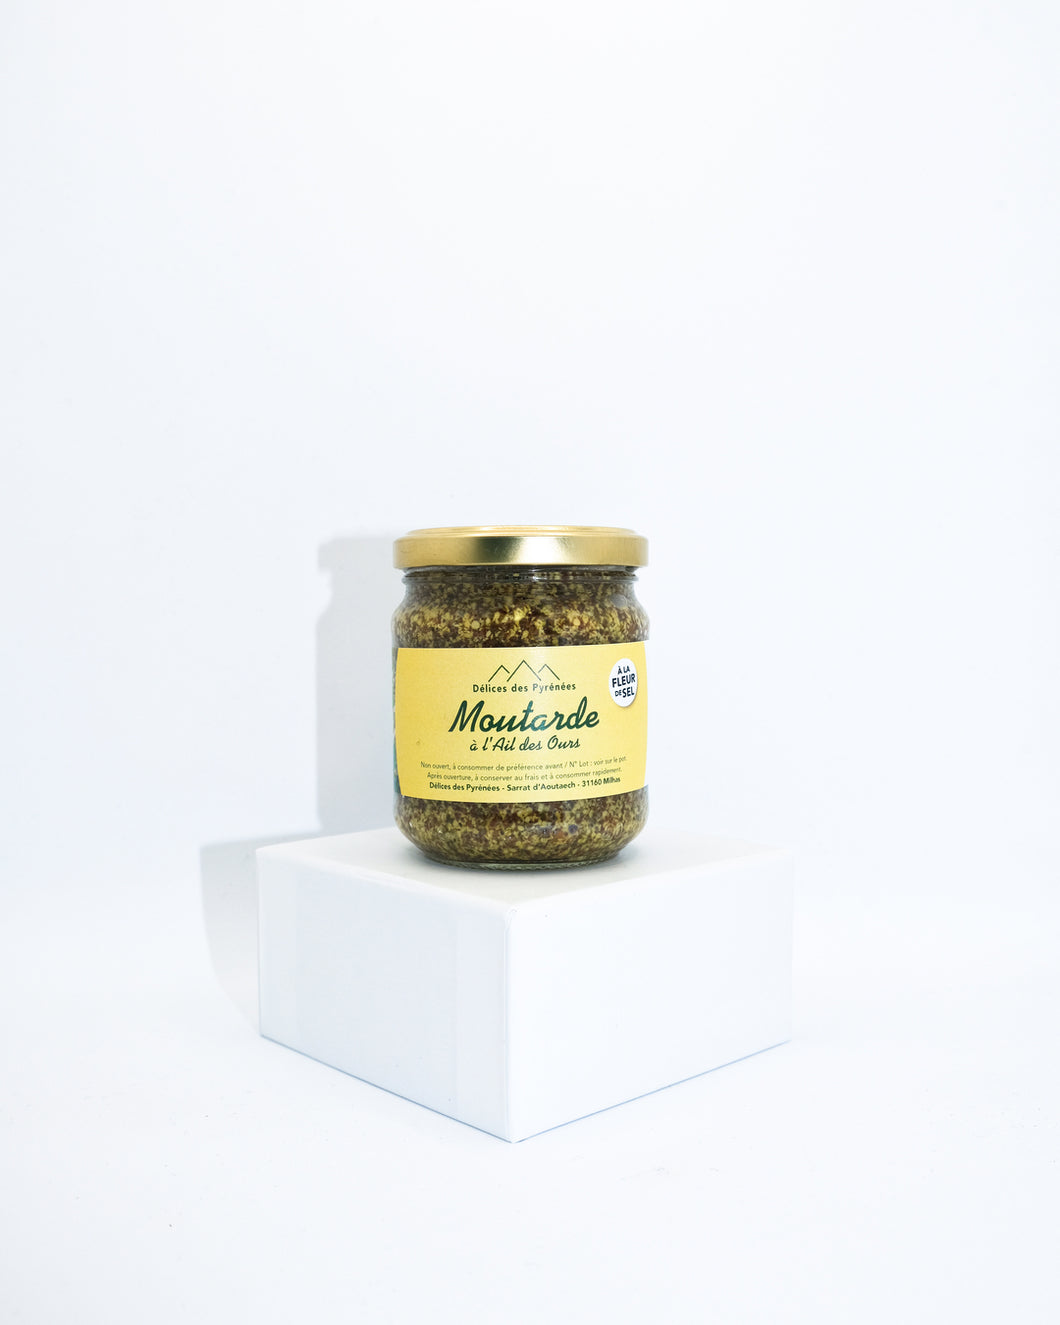 Old fashioned wild garlic mustard